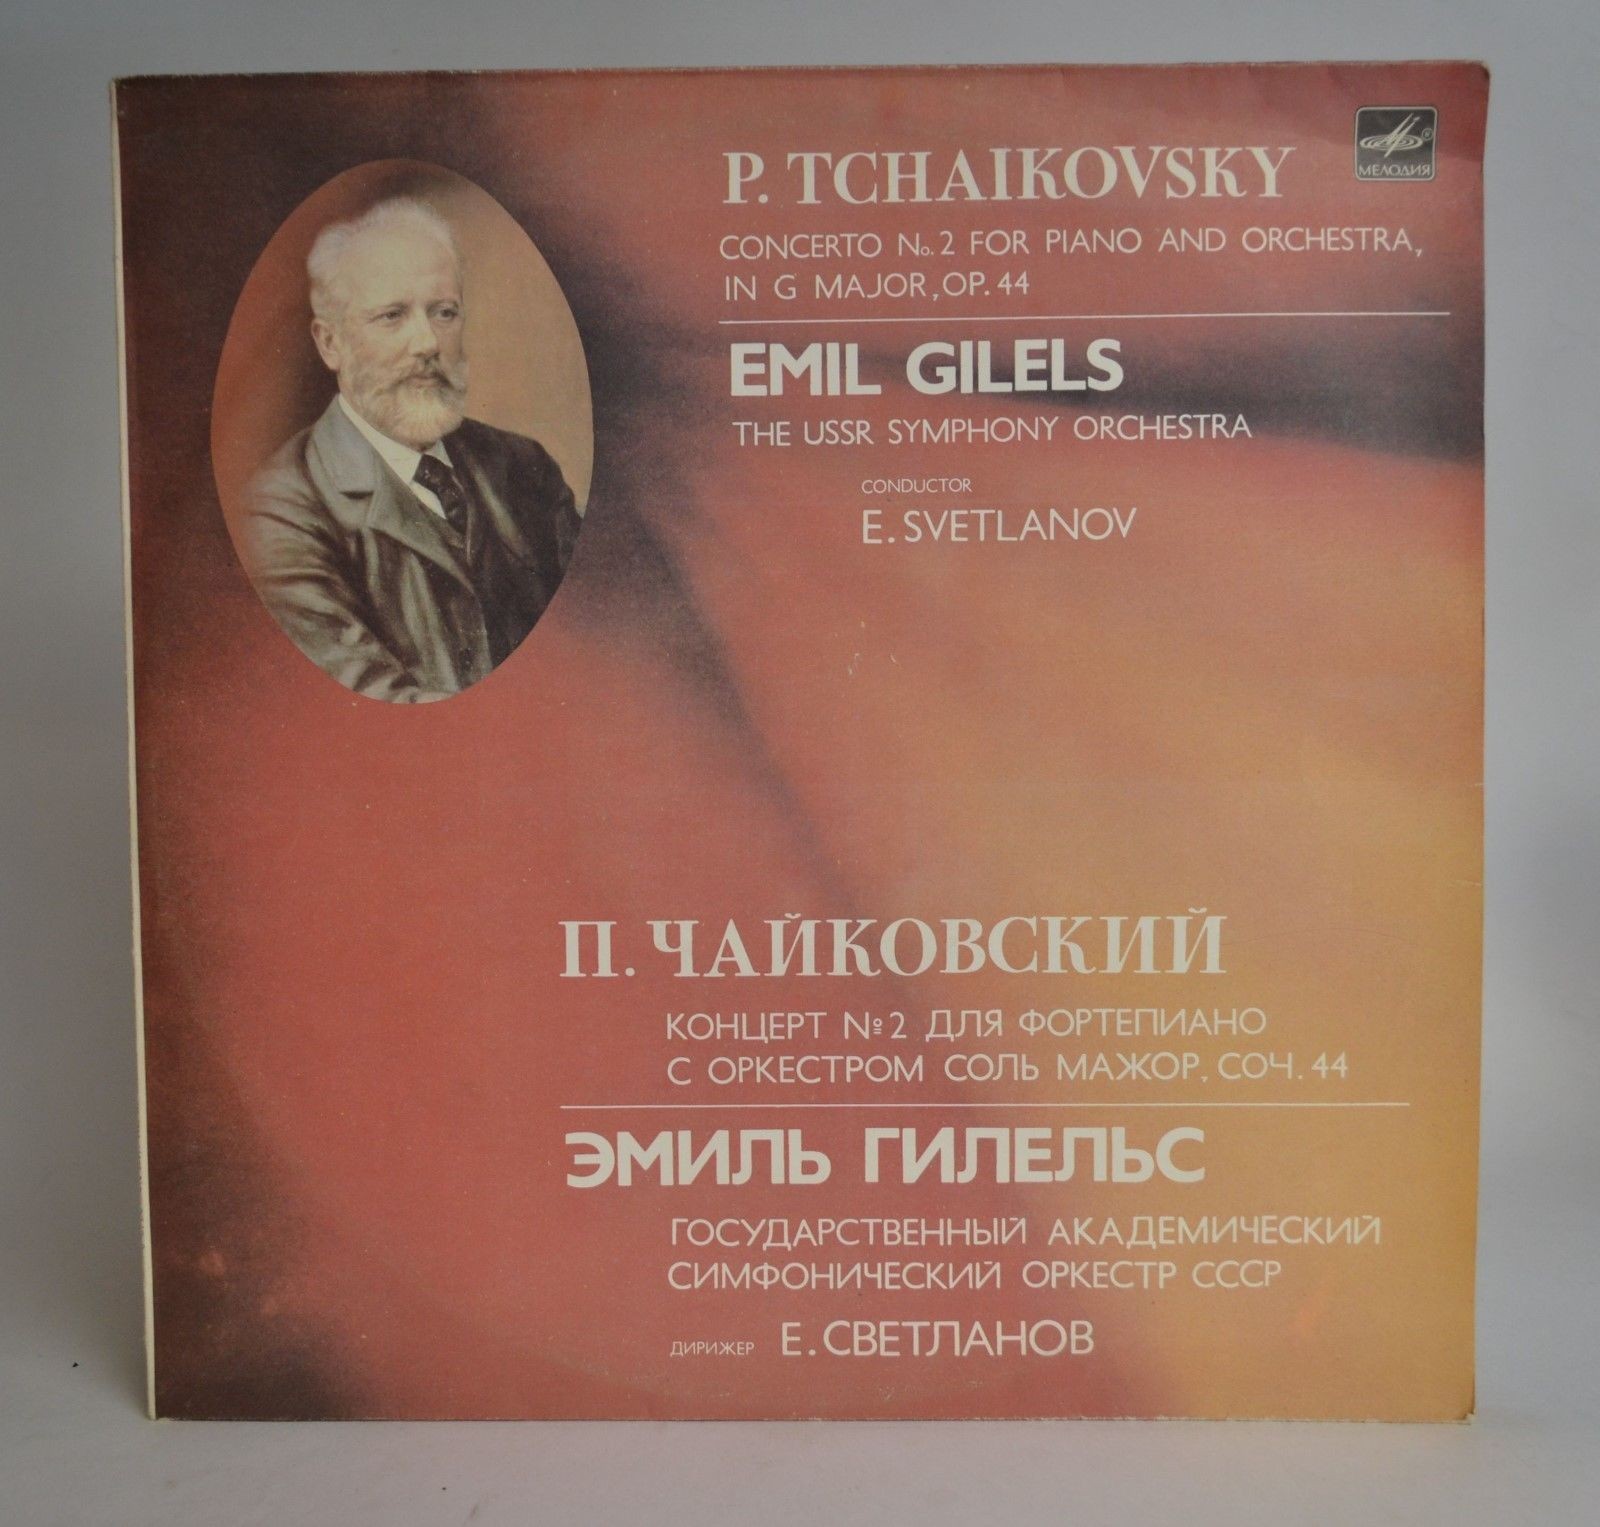 П. ЧАЙКОВСКИЙ (1840-1893): Концерт № 2 для фортепиано с оркестром соль мажор, соч. 44 (Э. Гилельс)